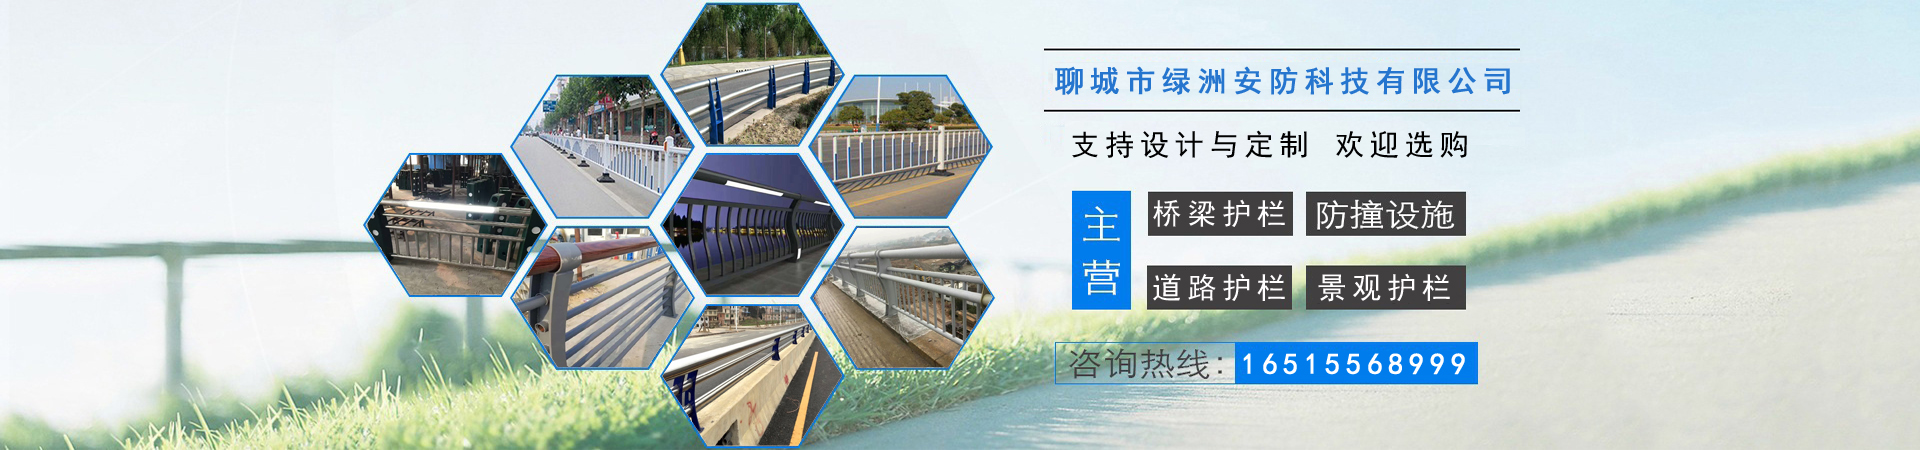 不锈钢碳素钢复合管、南京本地不锈钢碳素钢复合管、南京、南京不锈钢碳素钢复合管